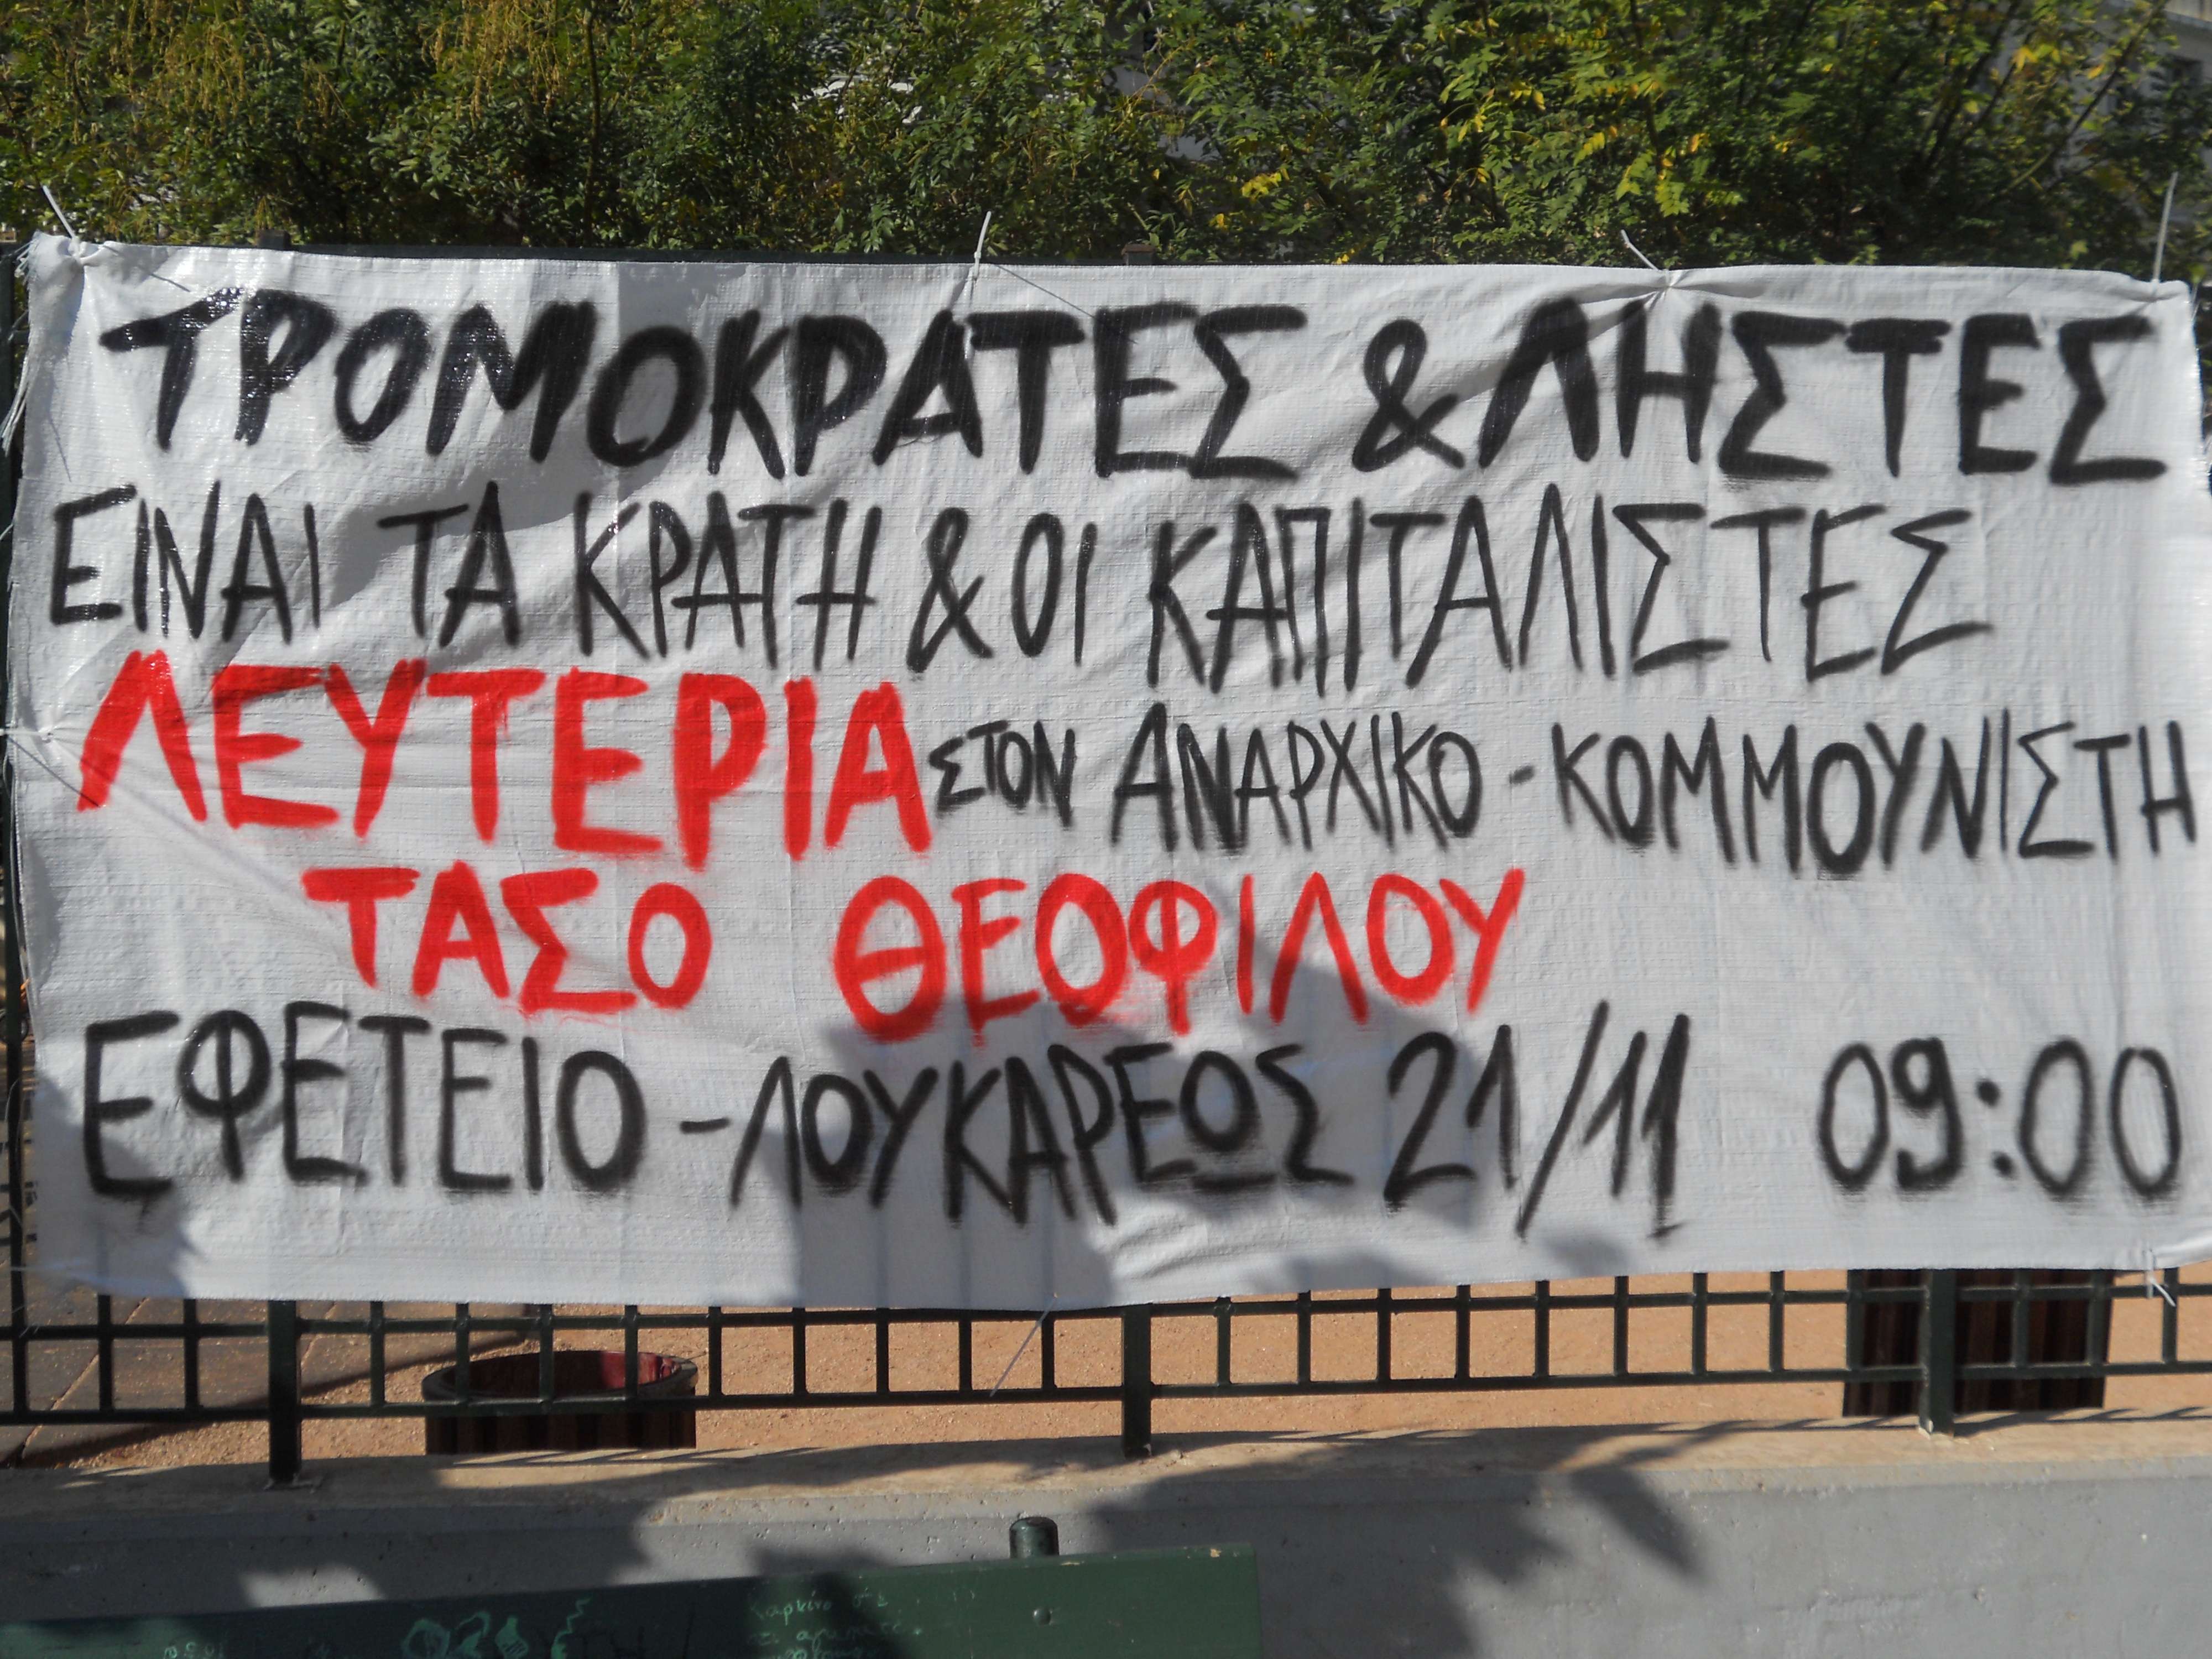 Αθήνα: Μοτοπορεία αντιπληροφόρησης και αλληλεγγύης στον Τάσο Θεοφίλου